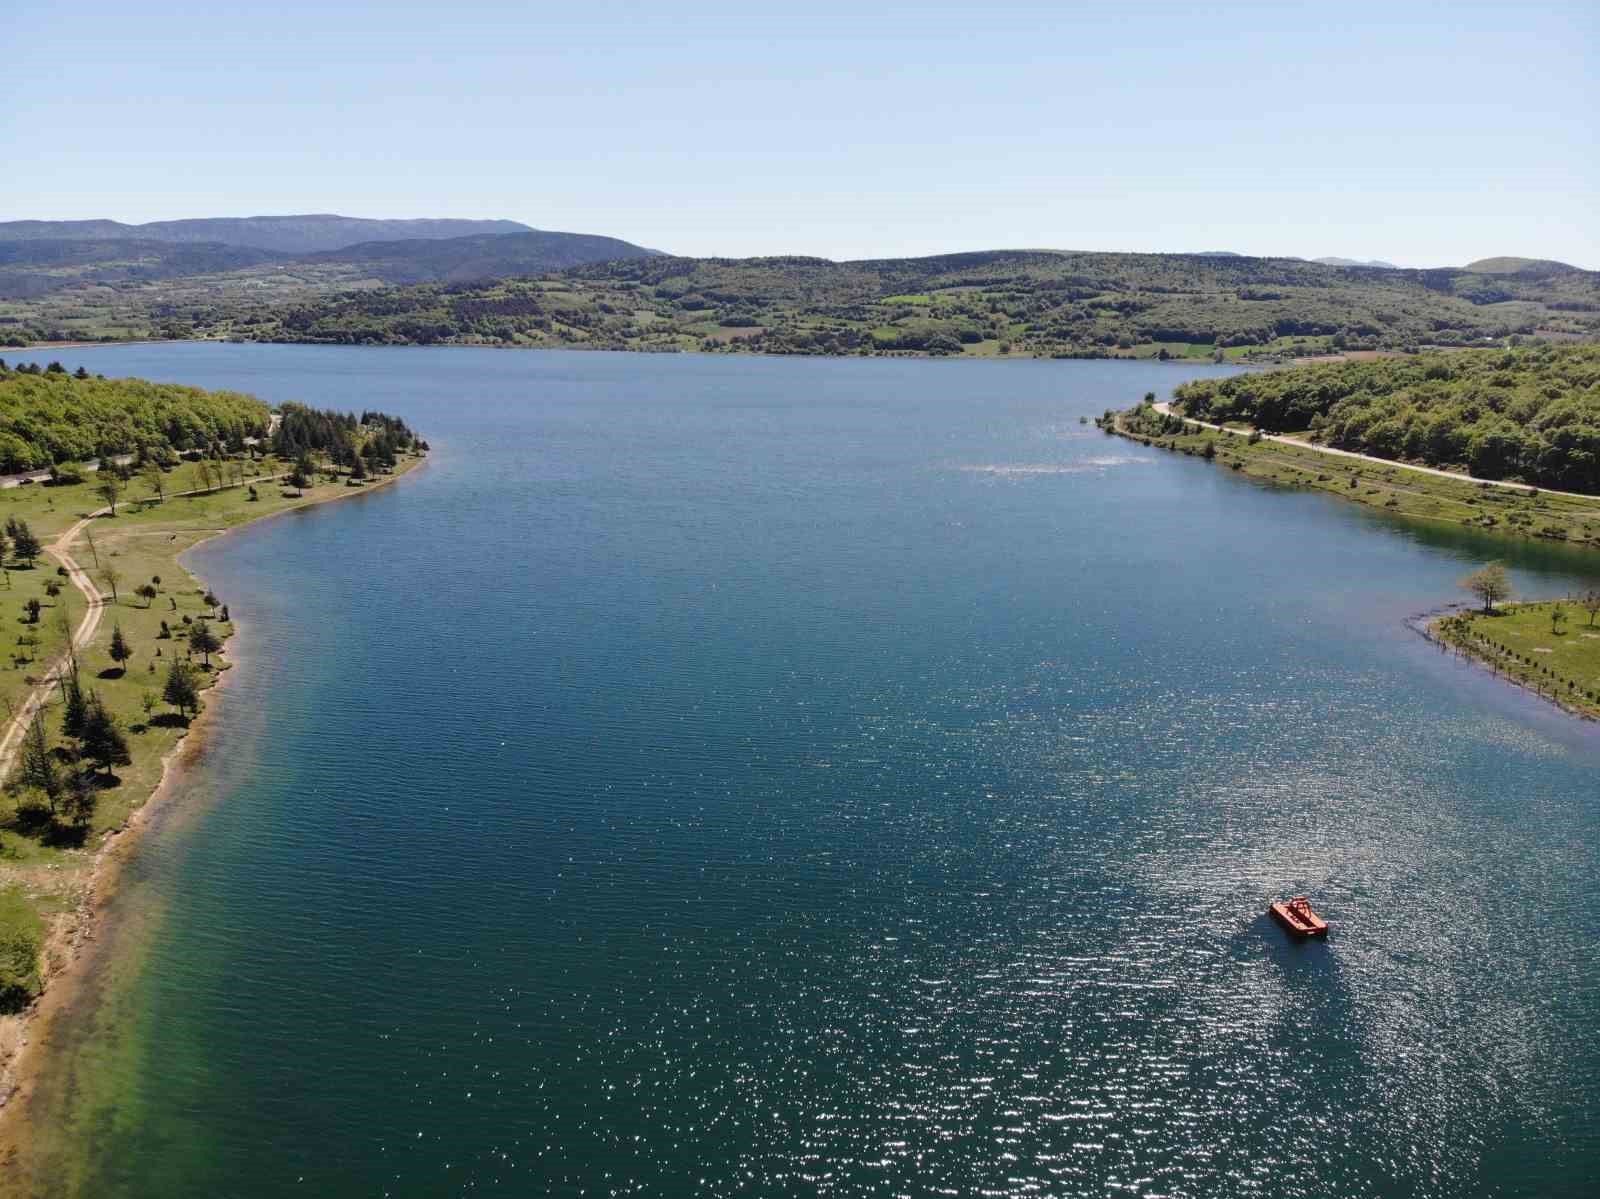 Bolu’nun içme suyu ihtiyacını karşılayan Gölköy Barajı’nda doluluk yüzde 96’ya ulaştı